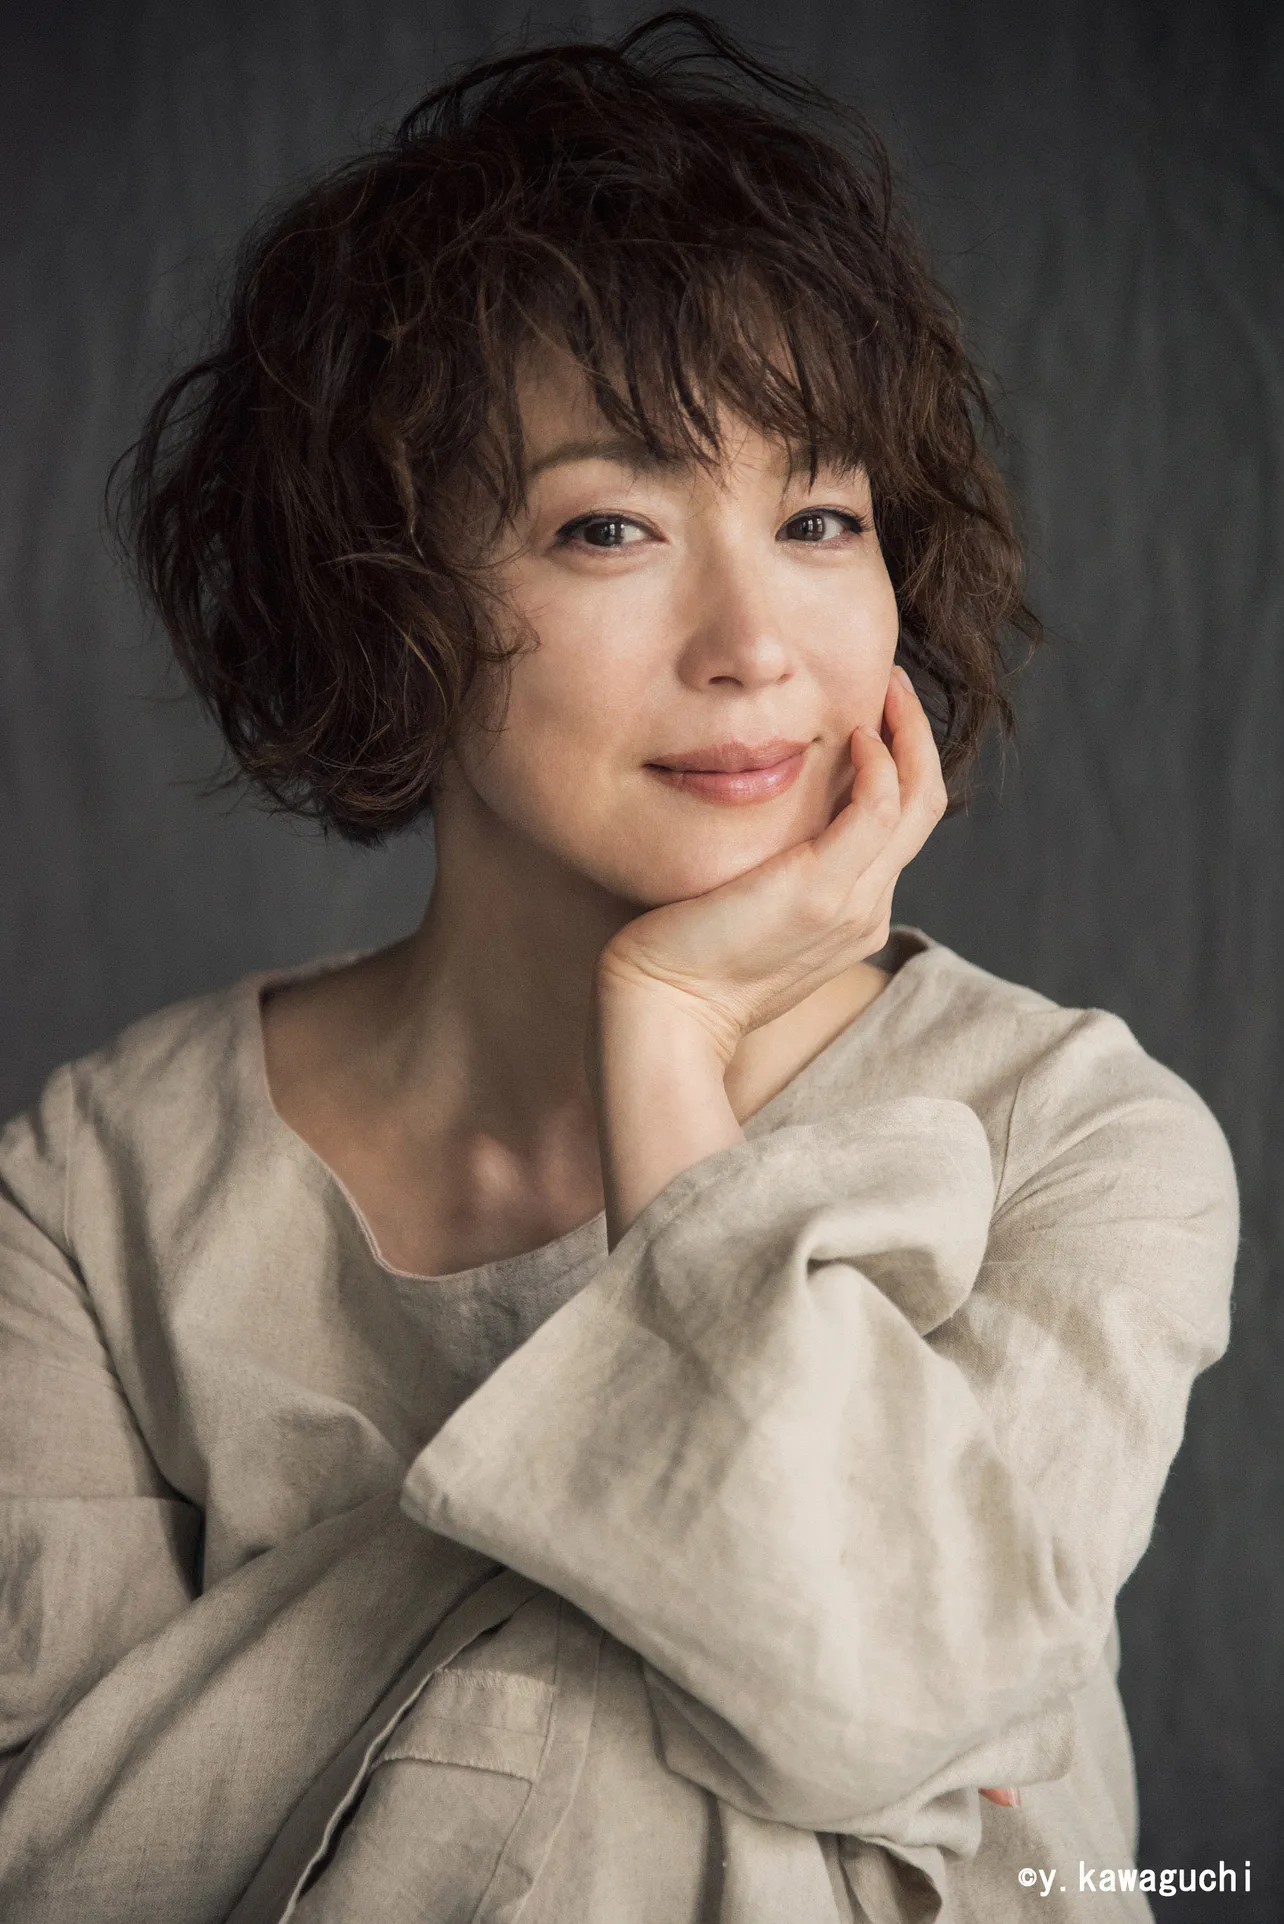 7月期木曜劇場「この素晴らしき世界」で主演を務める若村麻由美